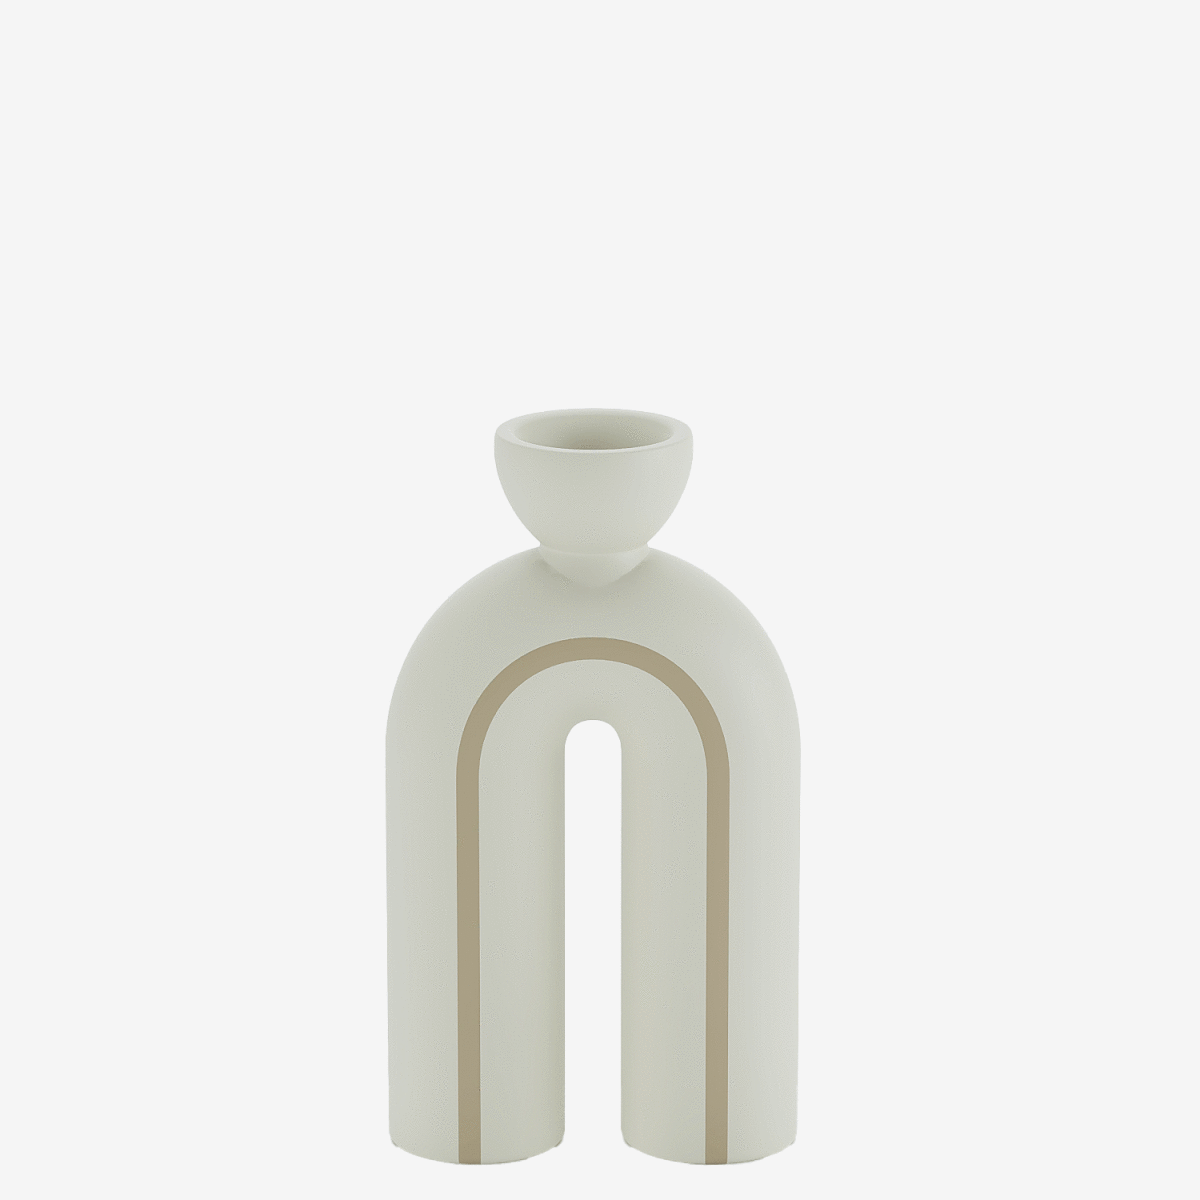 La déco pas cher en ligne Potiron Paris - Duo de bougeoirs design moderne en céramique claire